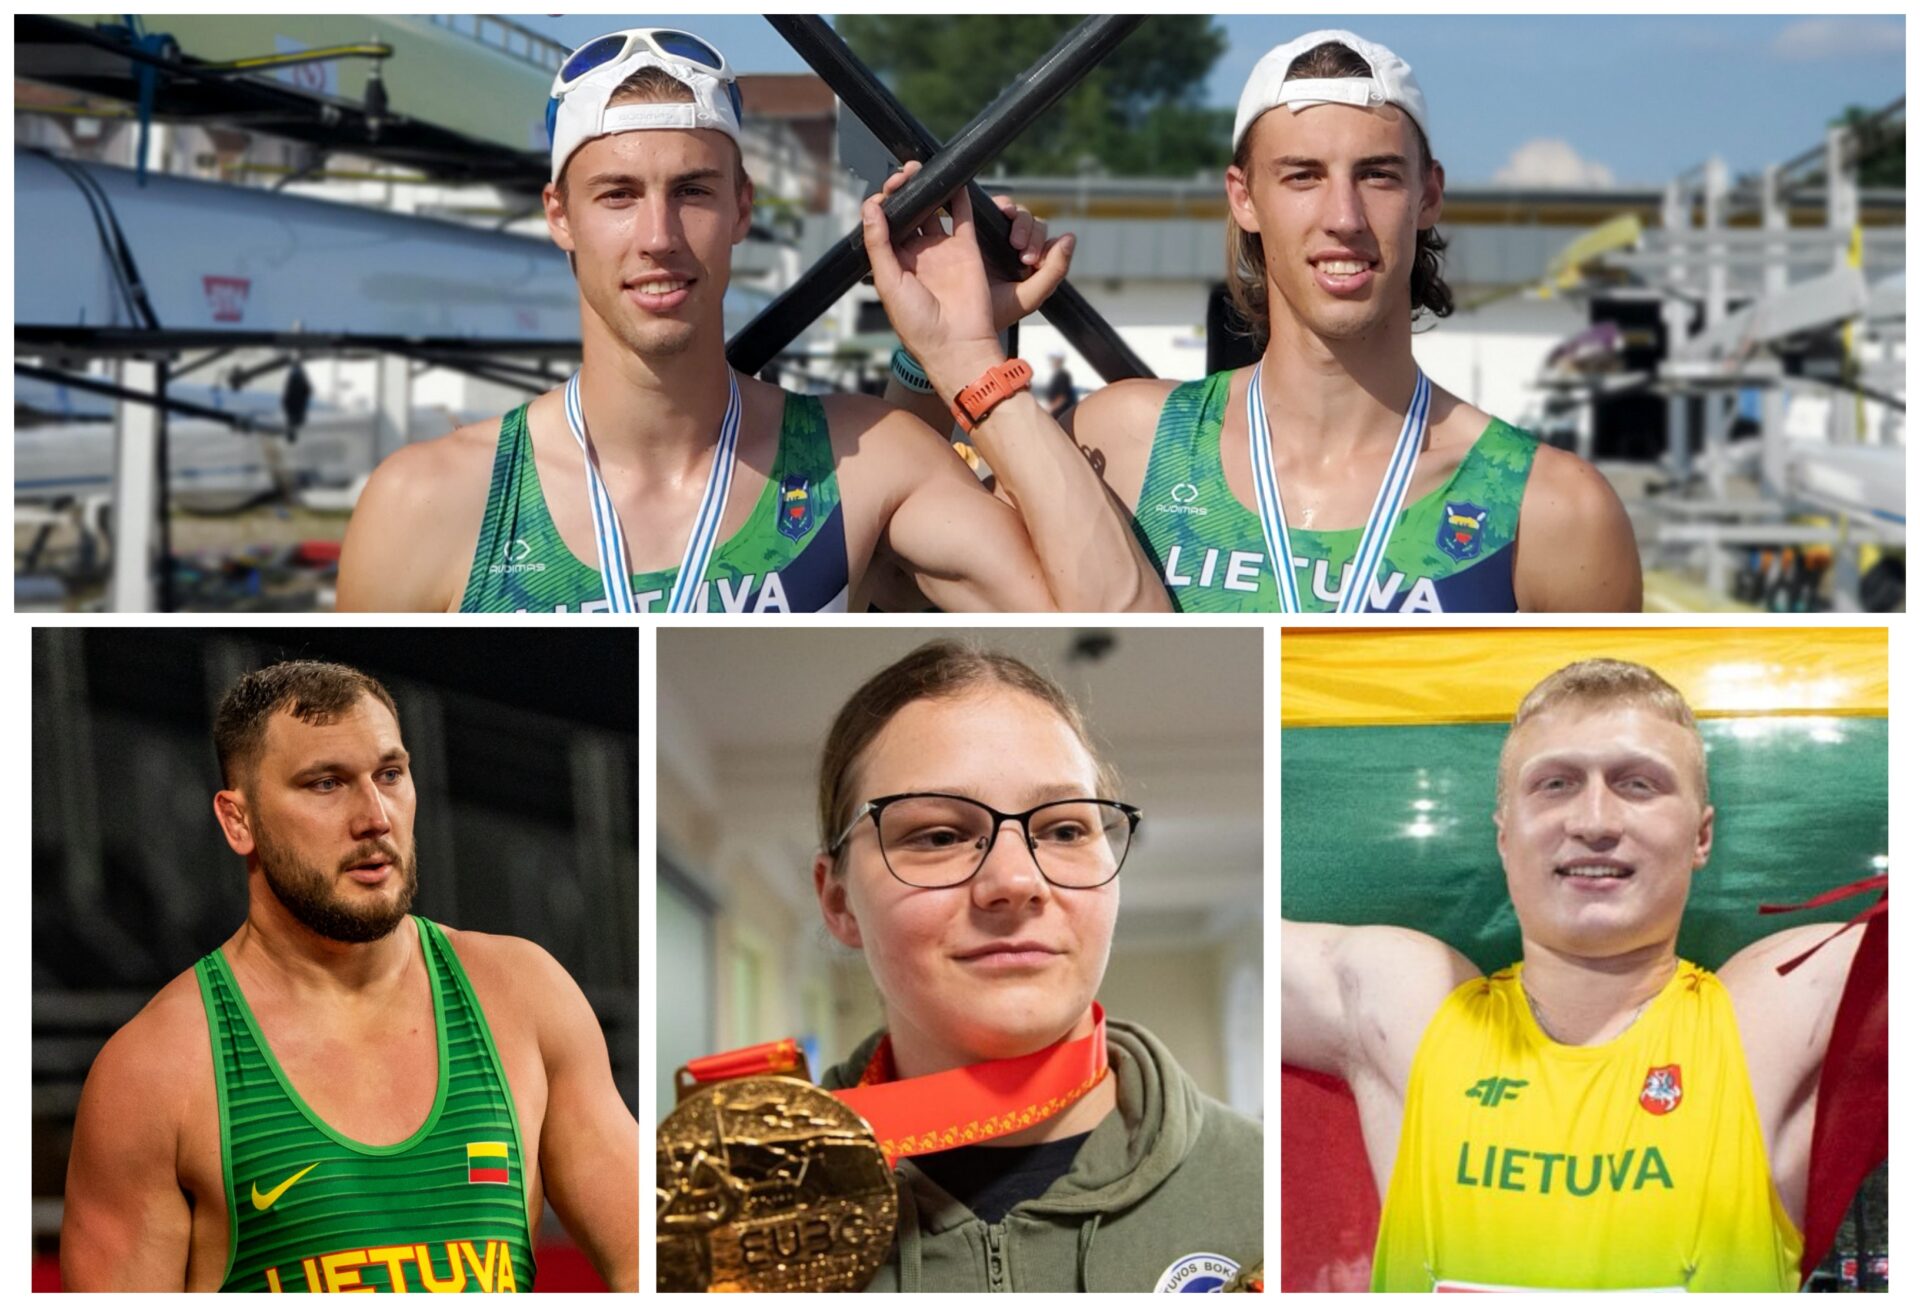 Premi sportivi lituani: scegli la SVOLTA DELL’ANNO